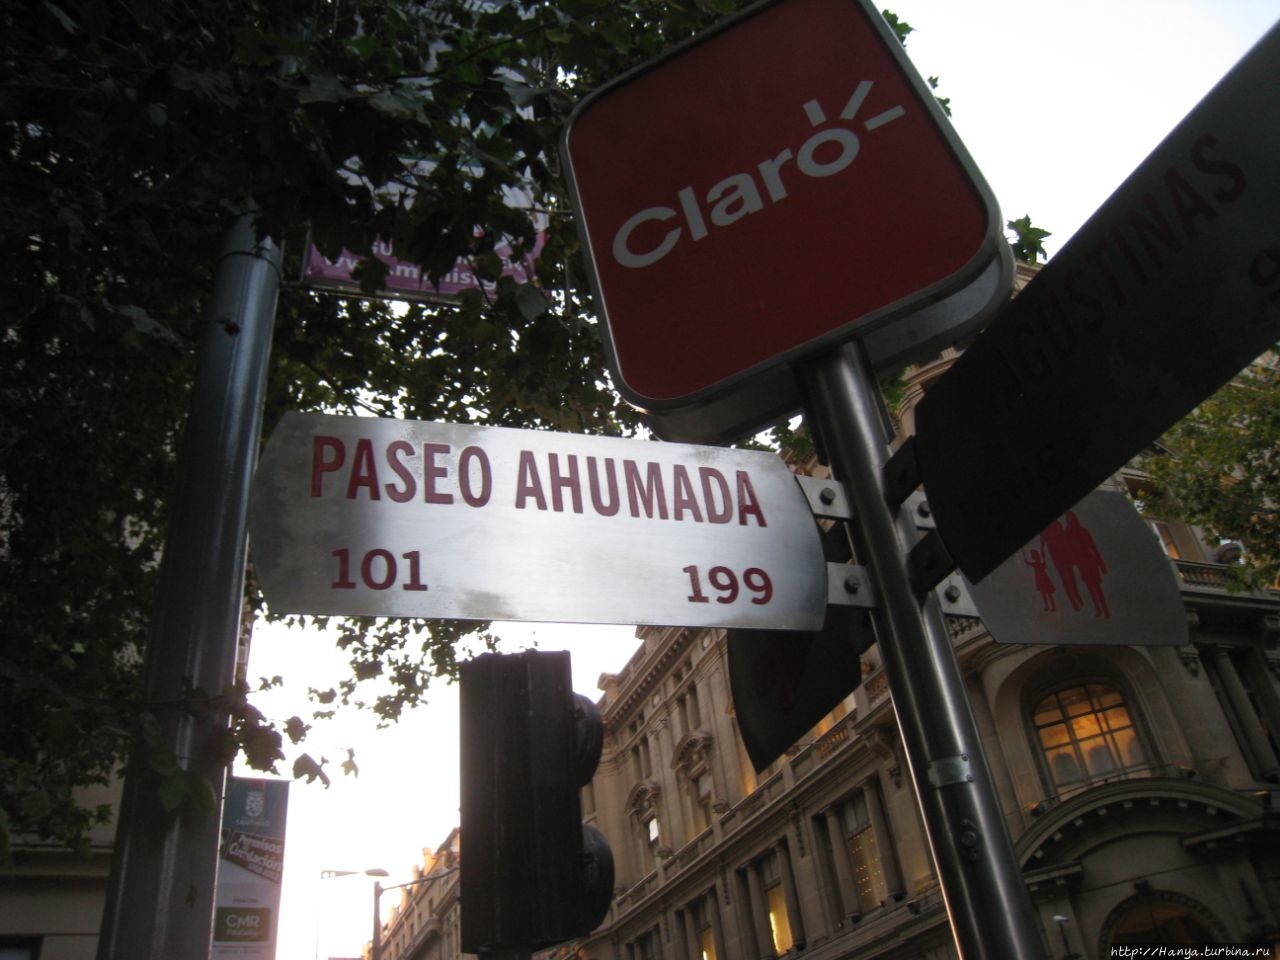 Пешеходная аллея Аумада Сантьяго, Чили